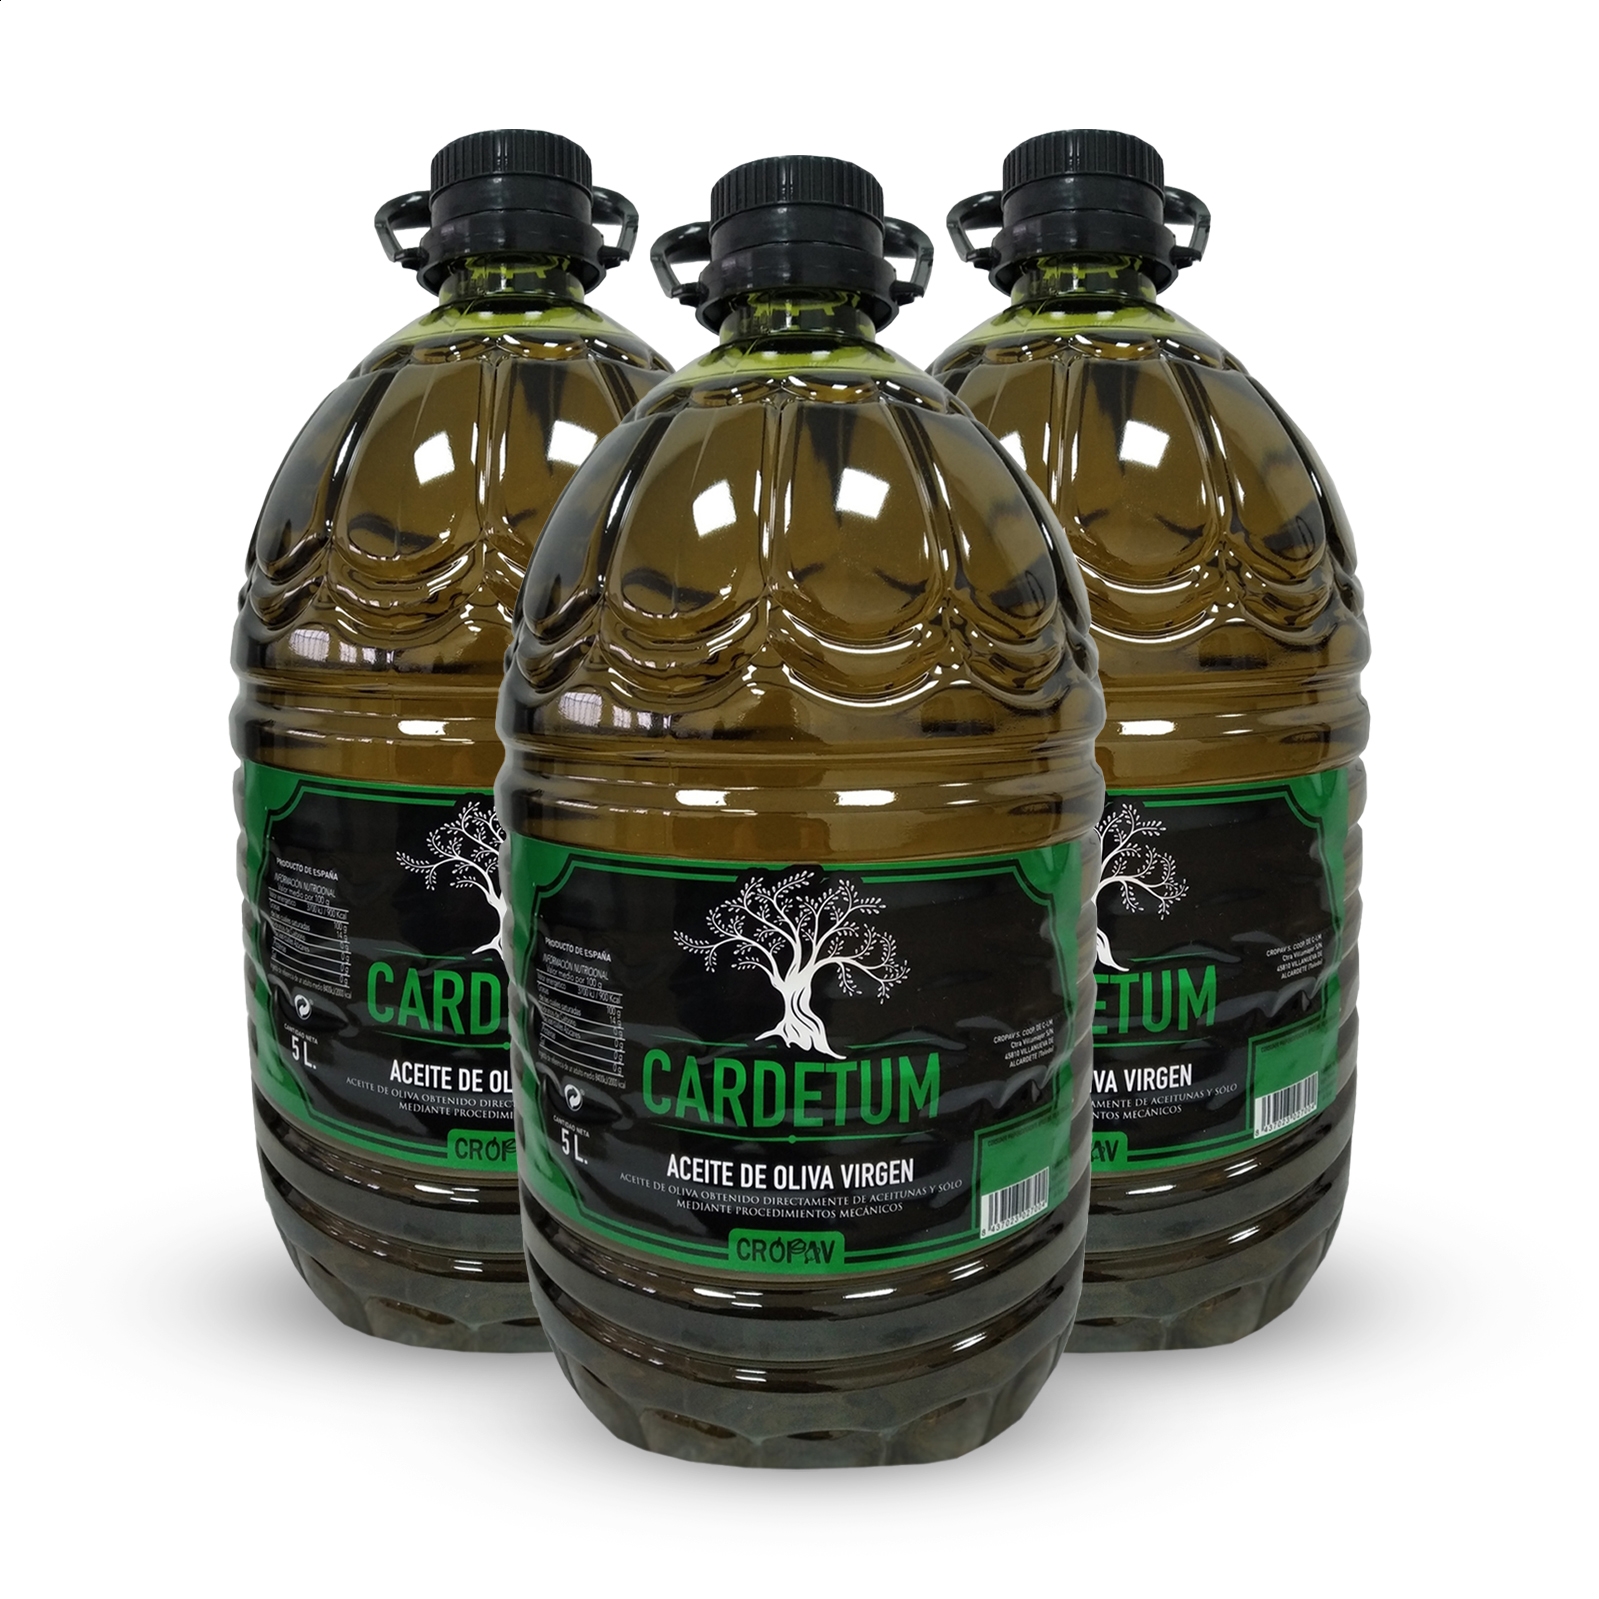 Cardetum - Aceite de oliva virgen 5L, 3uds